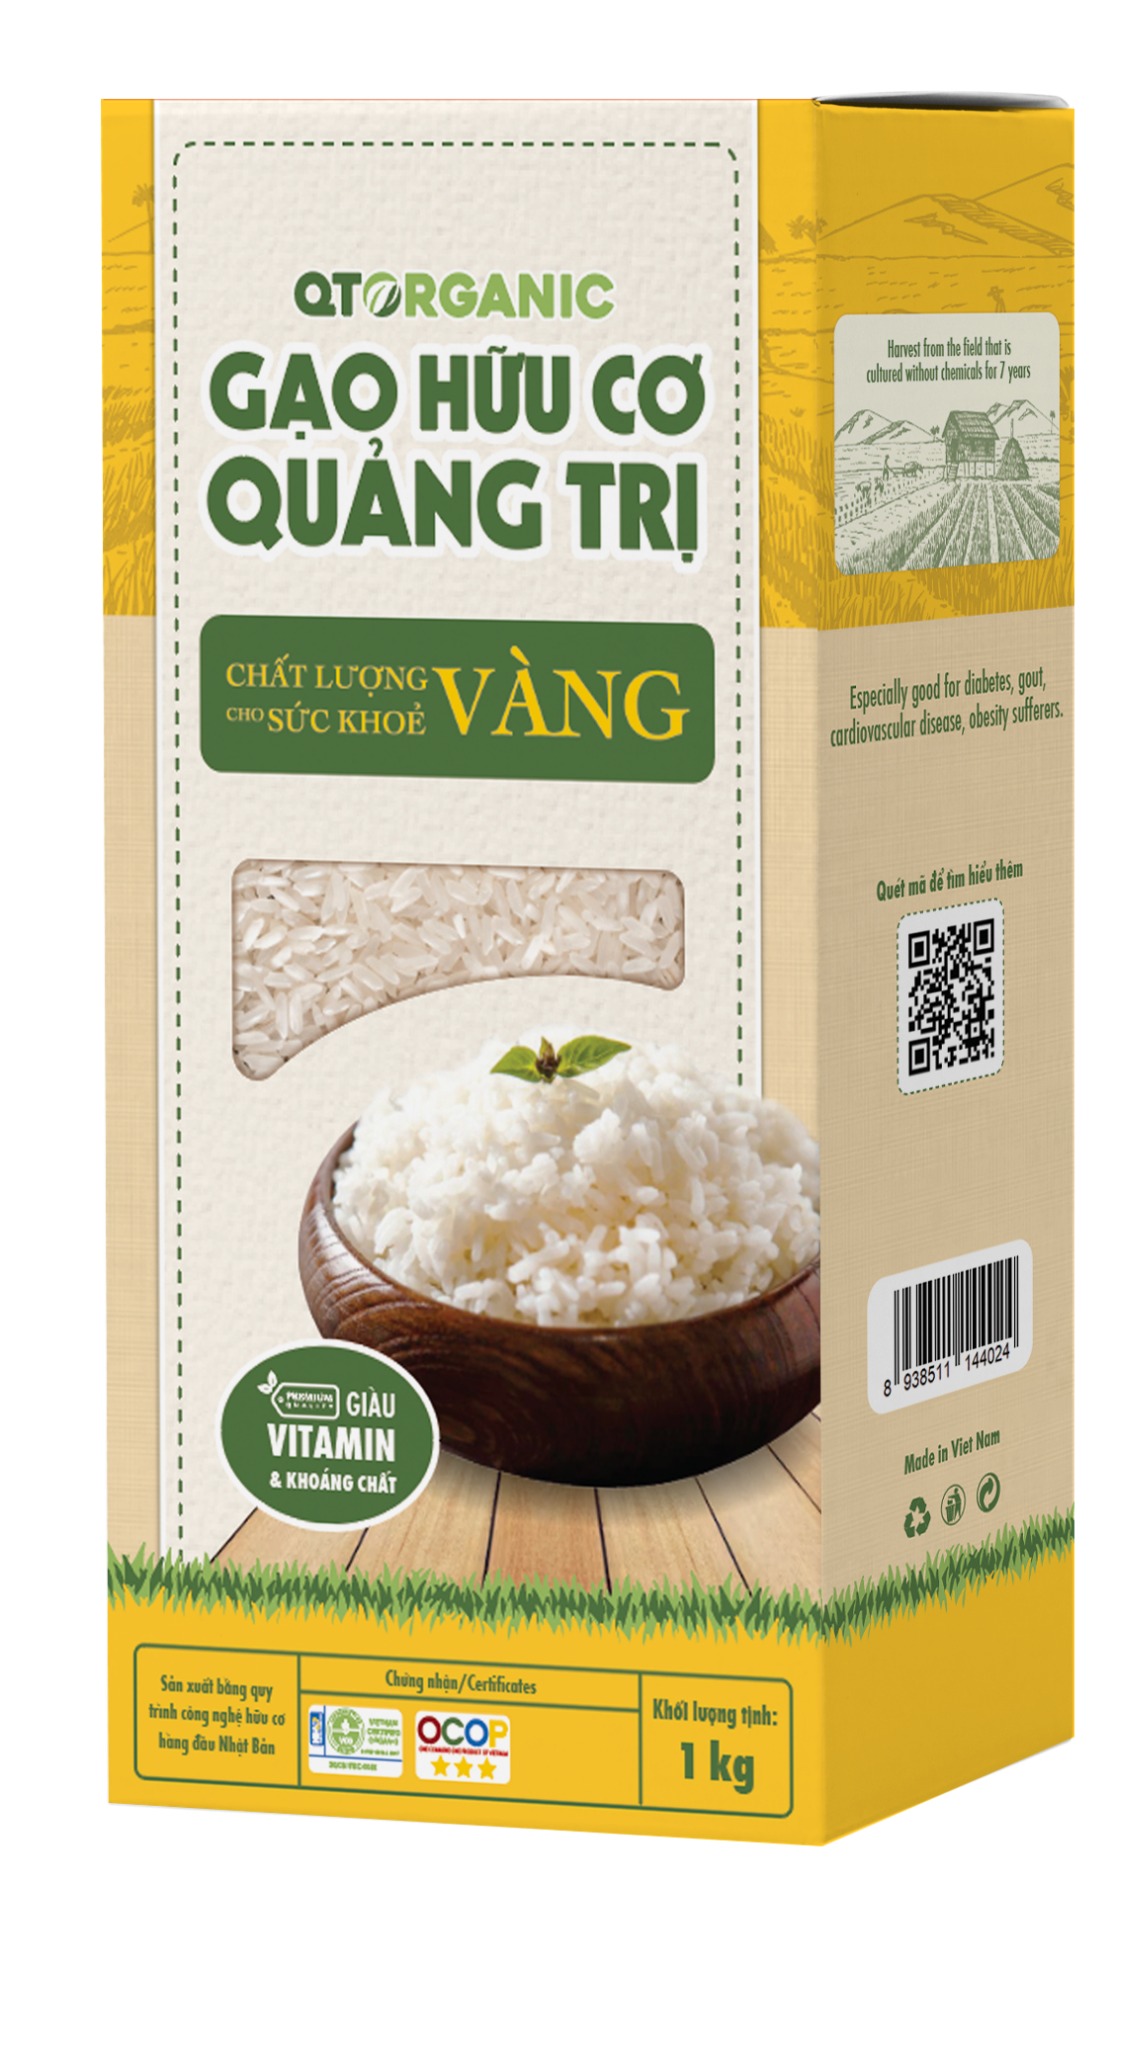 Gạo hữu cơ Quảng Trị chất lượng vàng 1kg